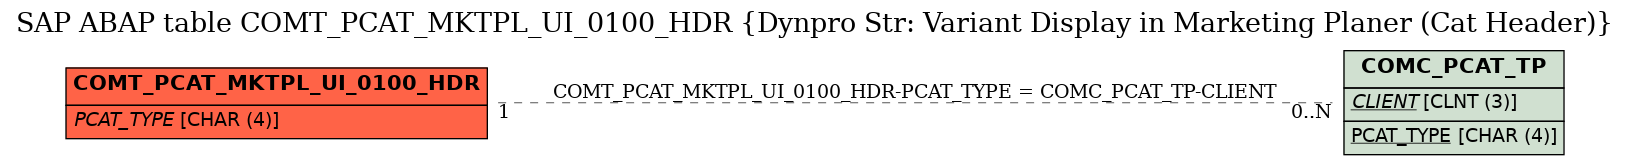 E-R Diagram for table COMT_PCAT_MKTPL_UI_0100_HDR (Dynpro Str: Variant Display in Marketing Planer (Cat Header))